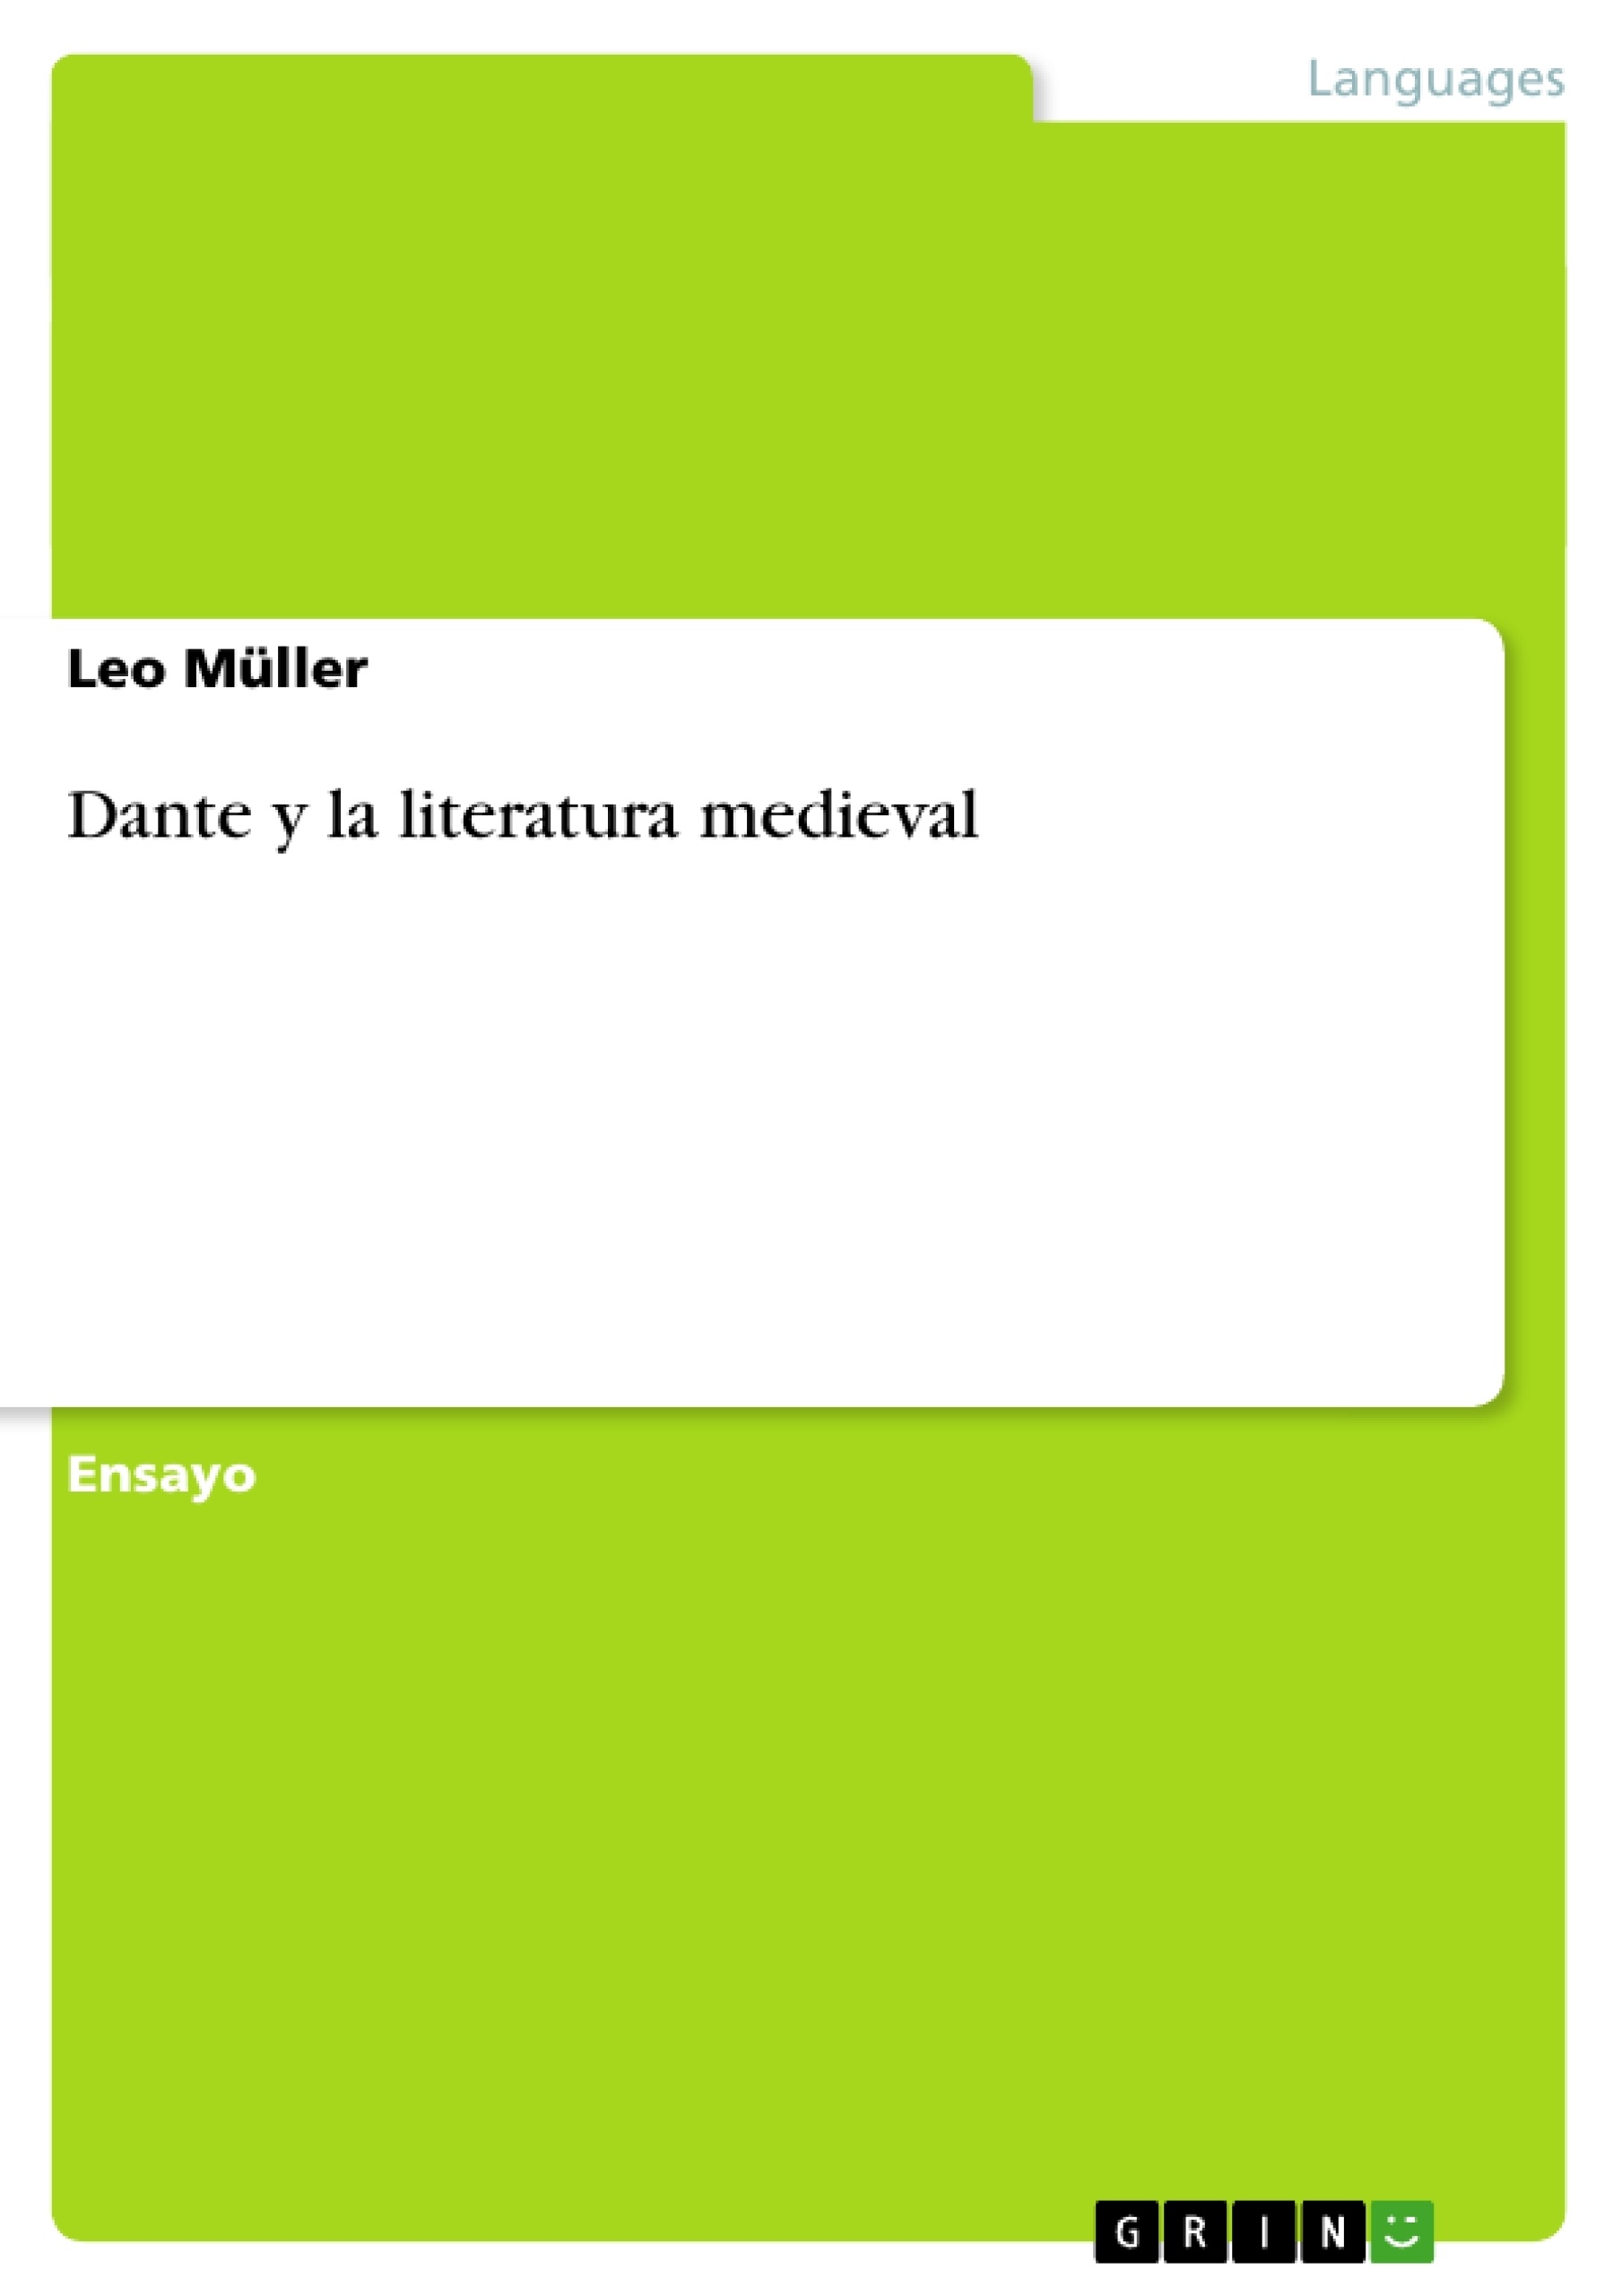 Título: Dante y la literatura medieval